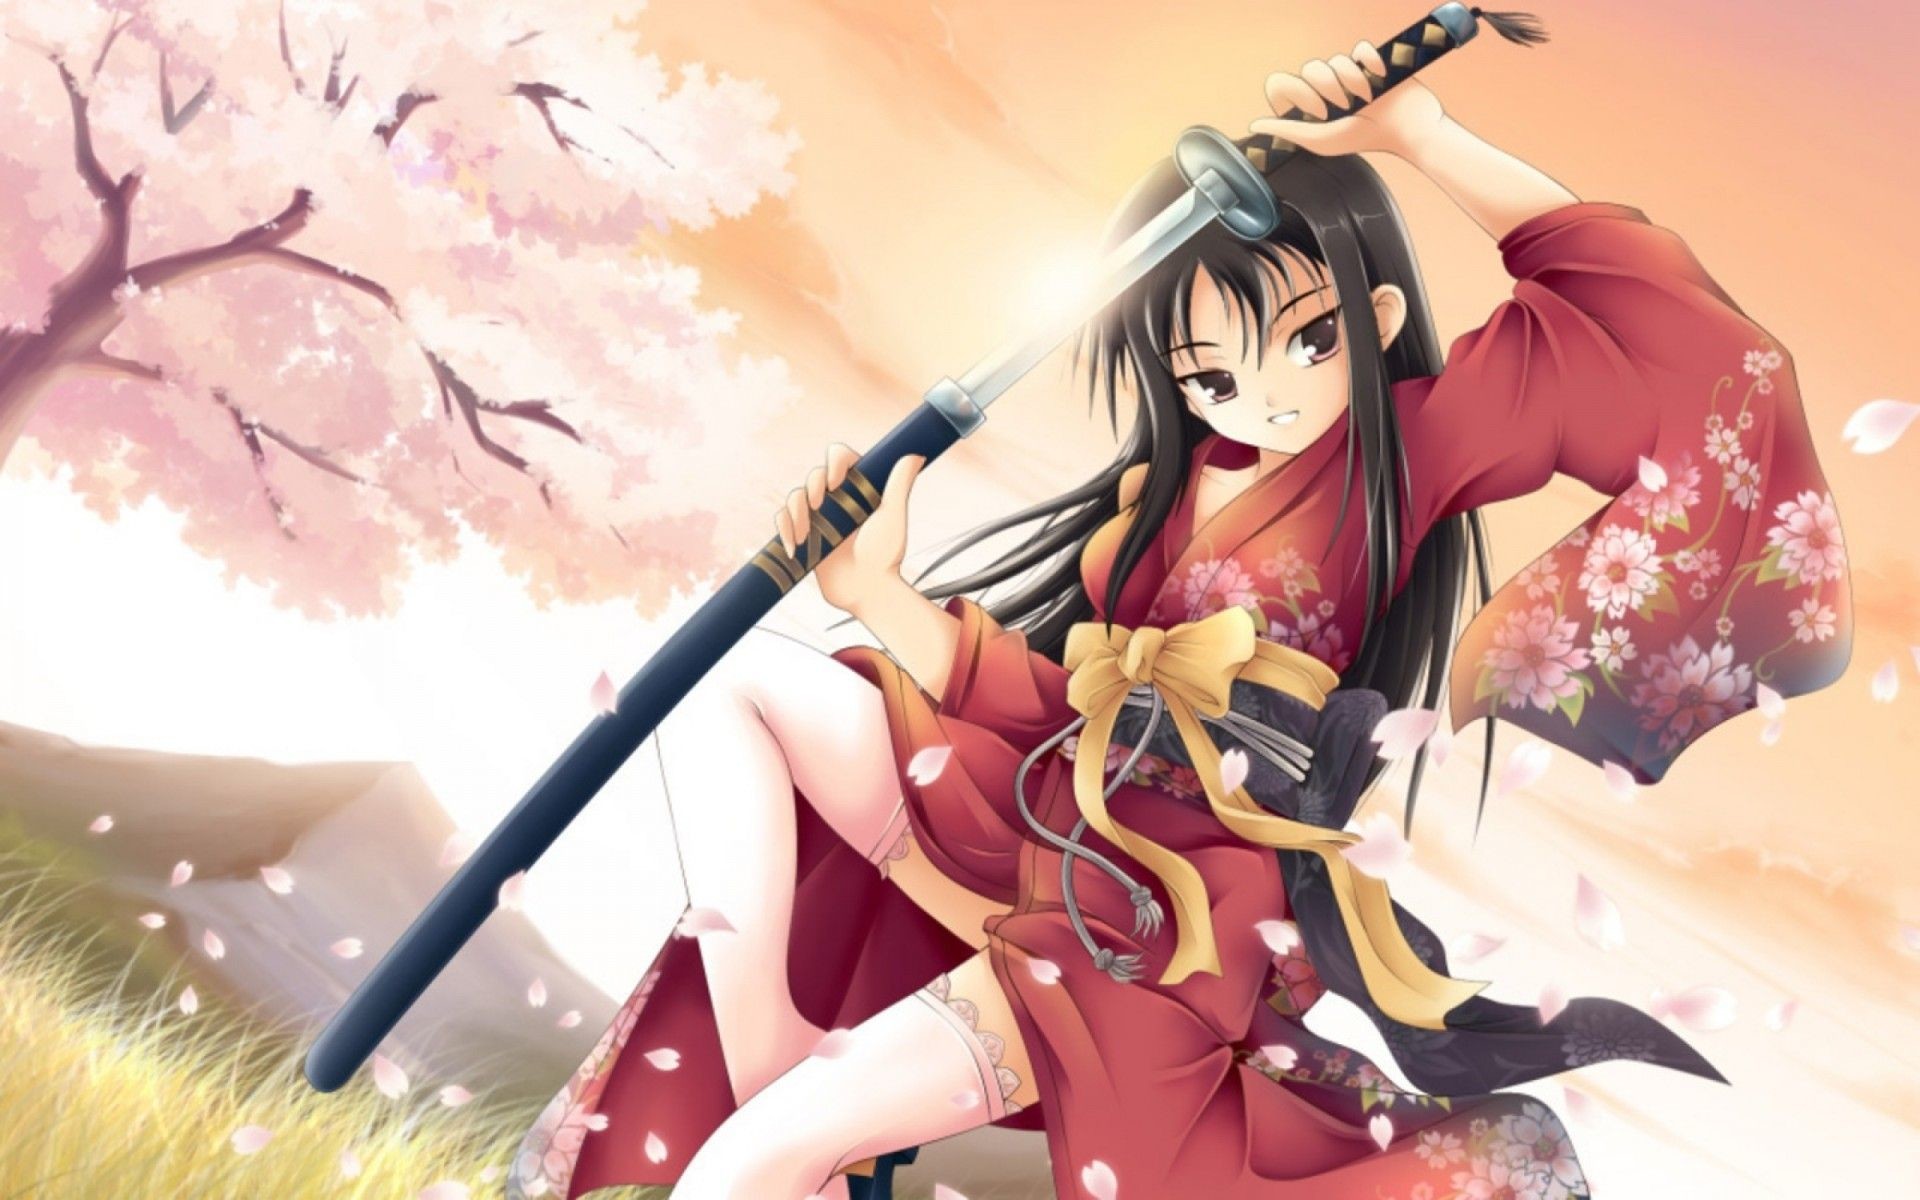 Images For Anime Samurai Wallpaper